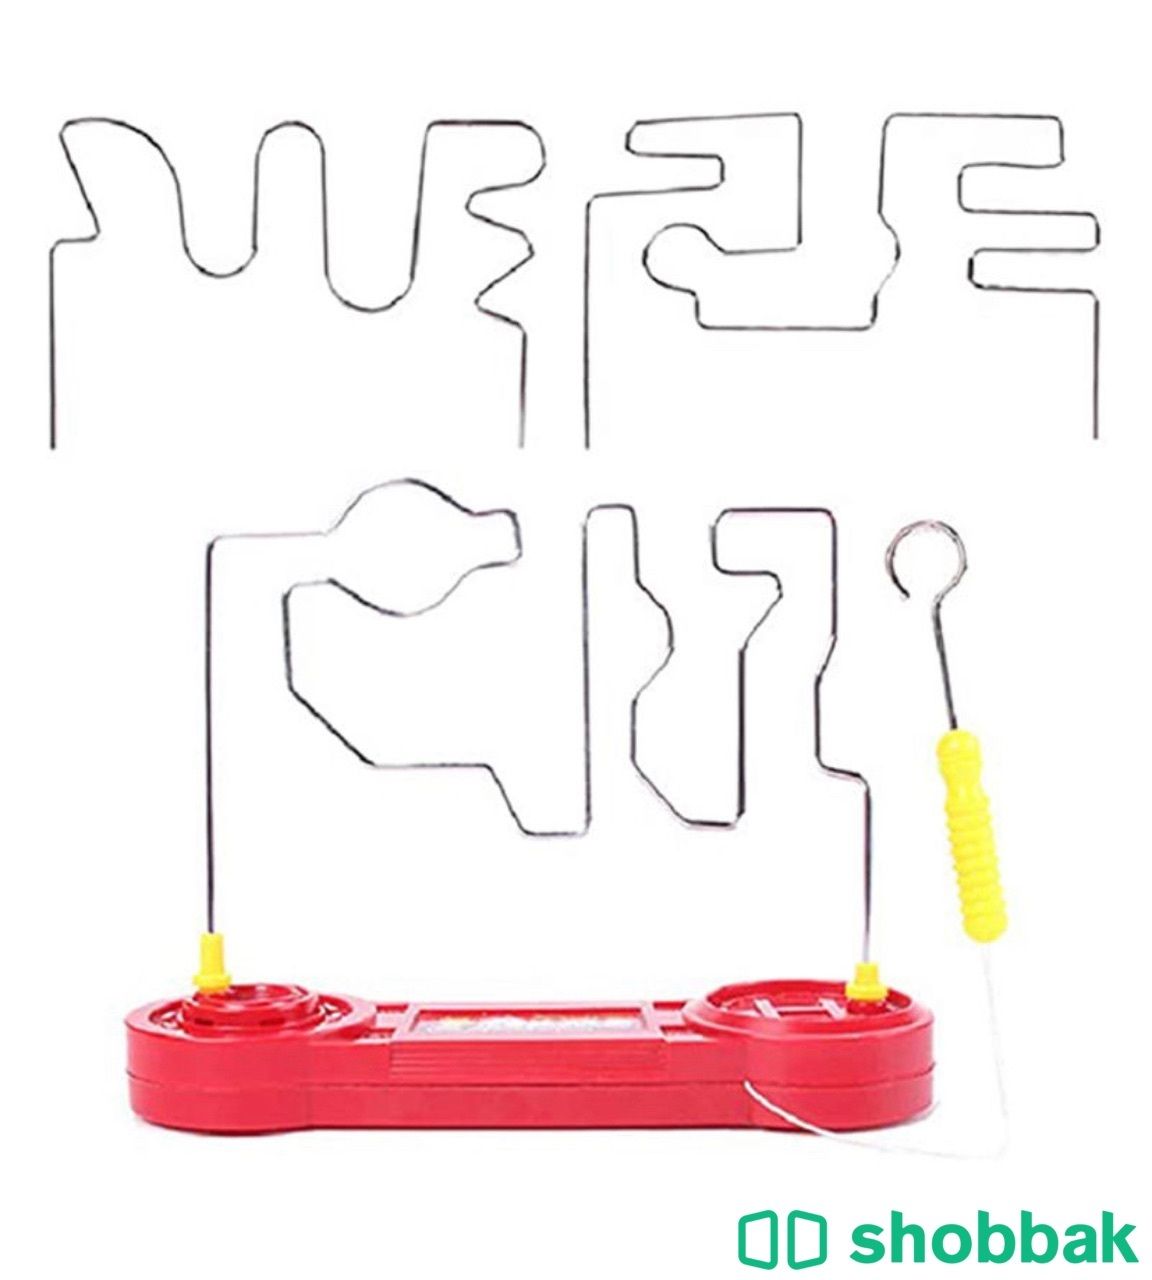 لعبة دونت باز مصنوعة من البلاستيك المتين عالي الجودة متعدد الألوان لعمر 4 سنوات  Shobbak Saudi Arabia